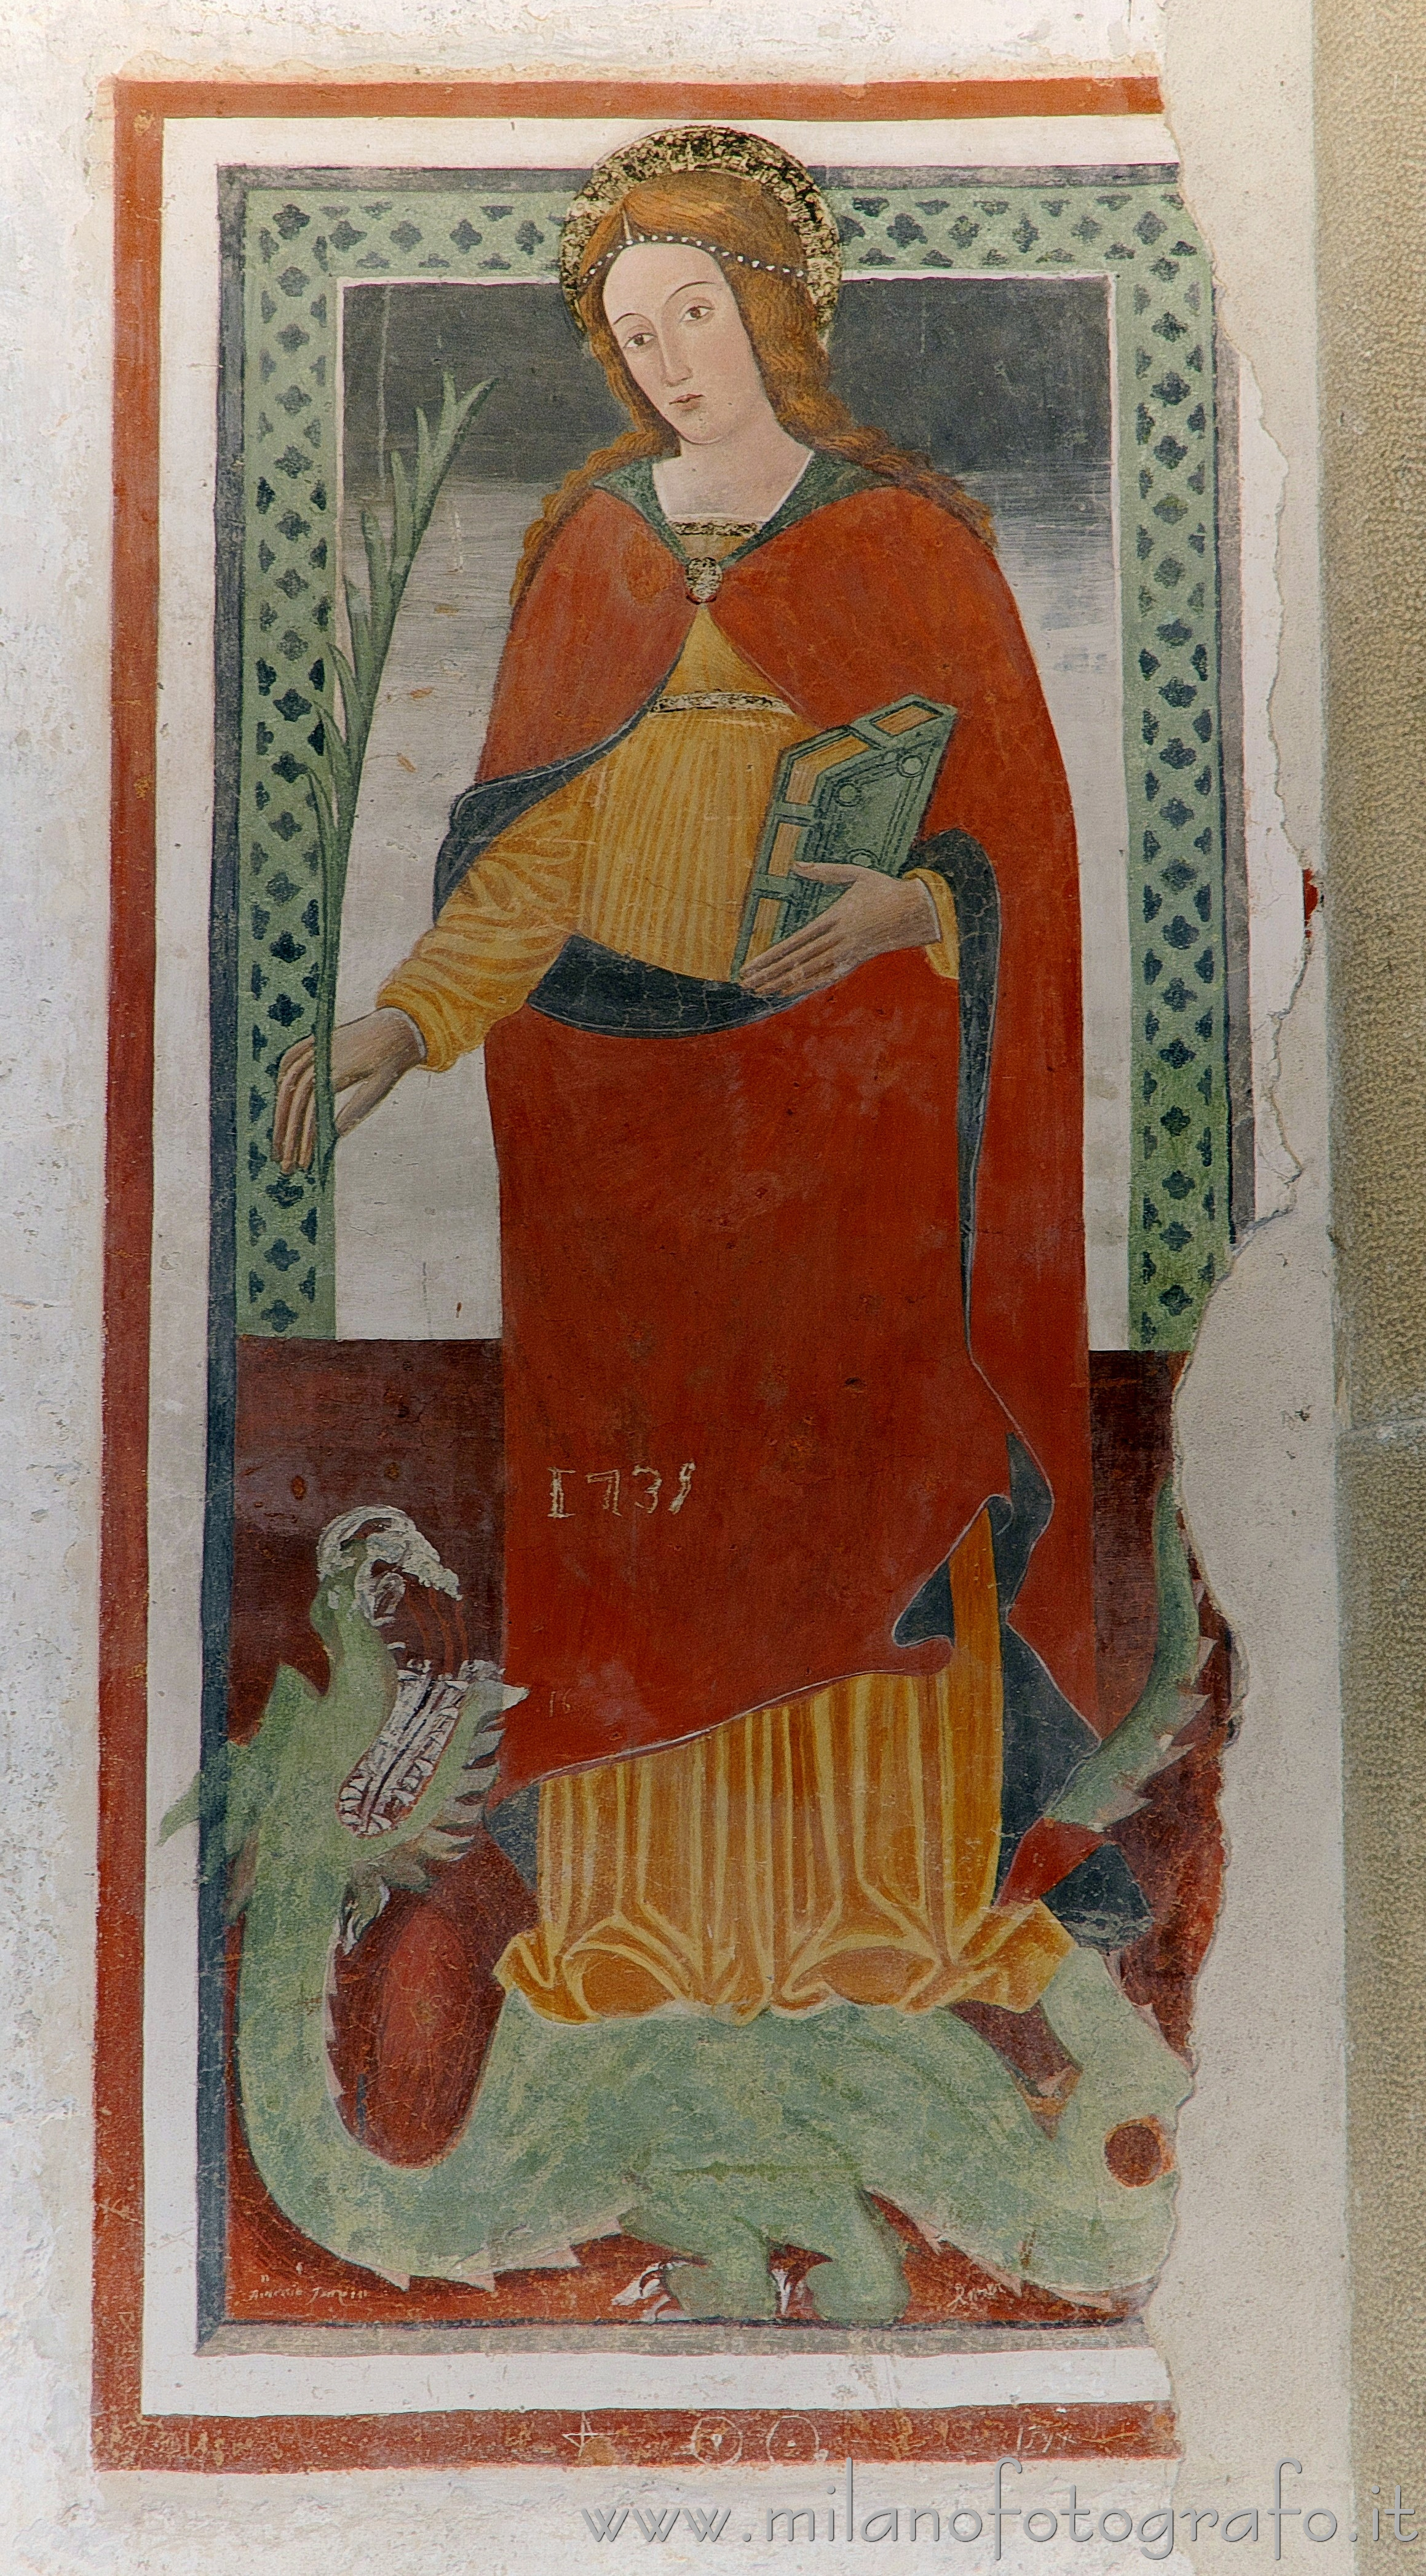 Oggiono (Lecco, Italy): Fresco of St. Euphemia in the Baptistery of San Giovanni Battista - Oggiono (Lecco, Italy)